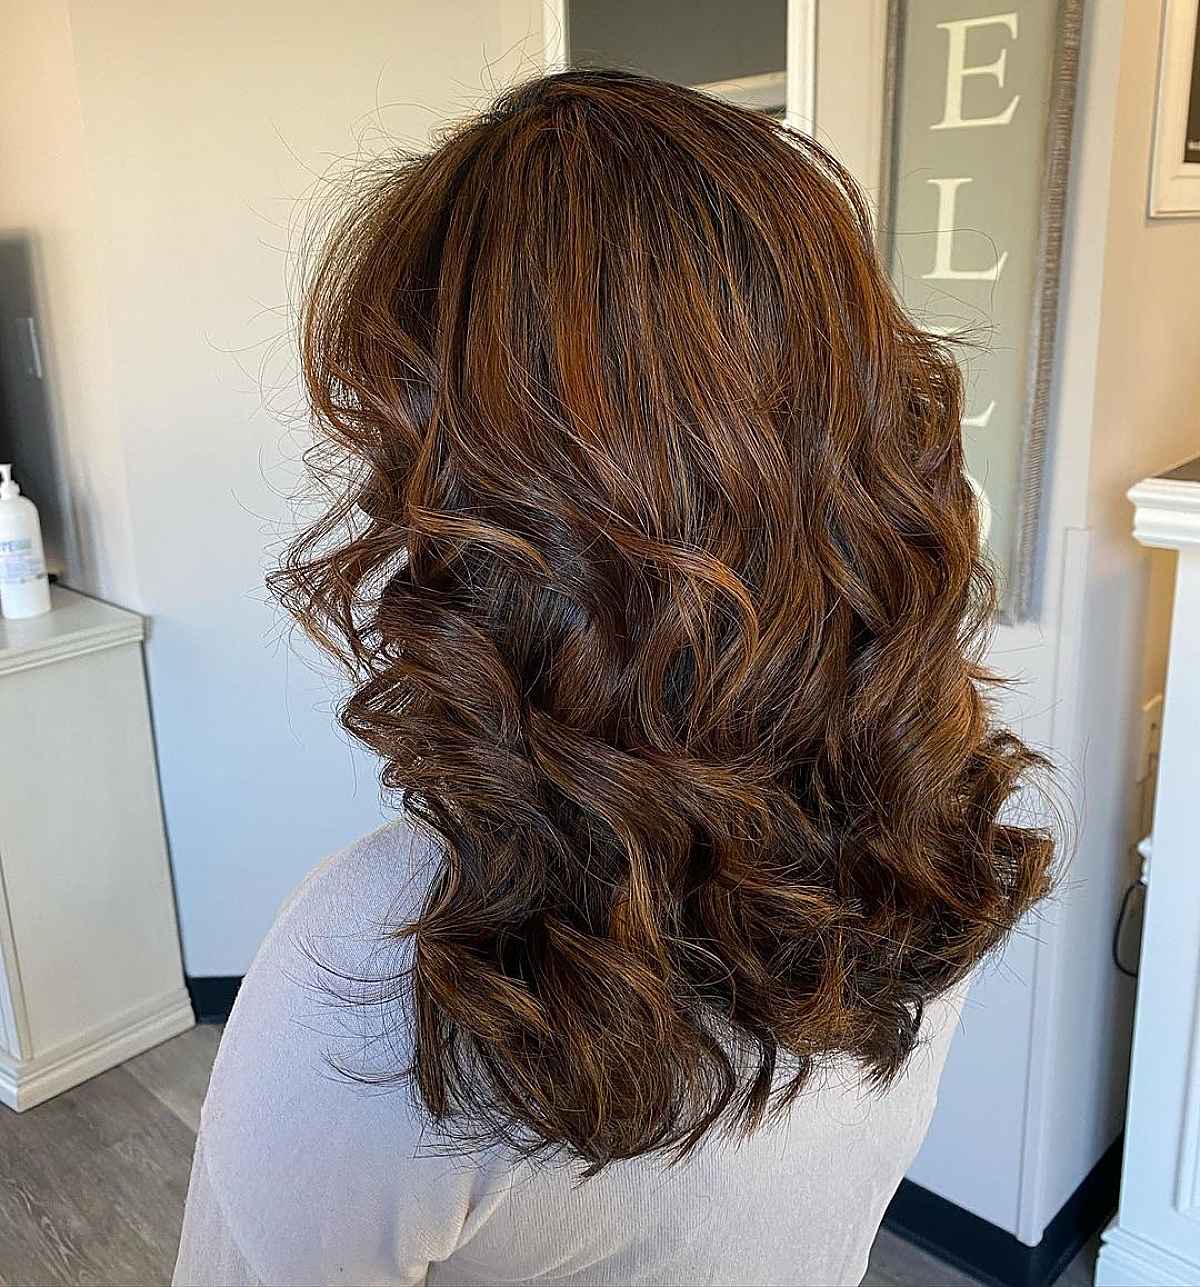 Blonde-copper highlights on dark hair